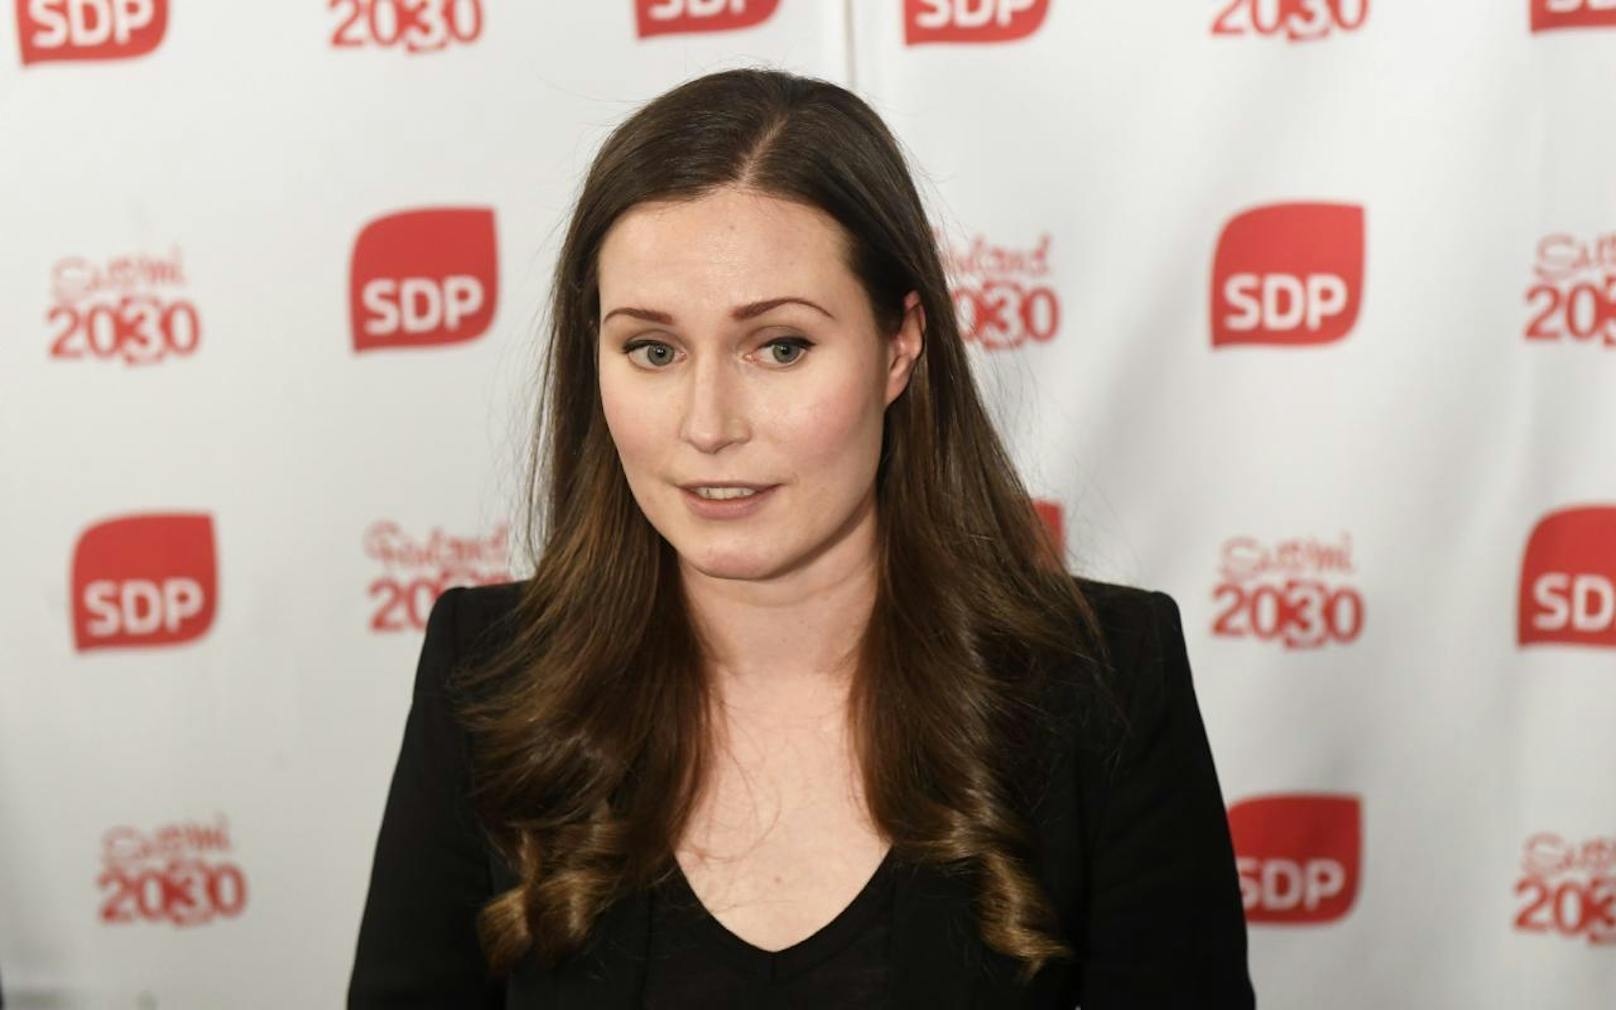 Sanna Marin von der sozialdemokratischen SDP ist neue Regierungschefin von Finnland. Die 34-Jährige ersetzt den zurückgetretenen Antti Rinne.